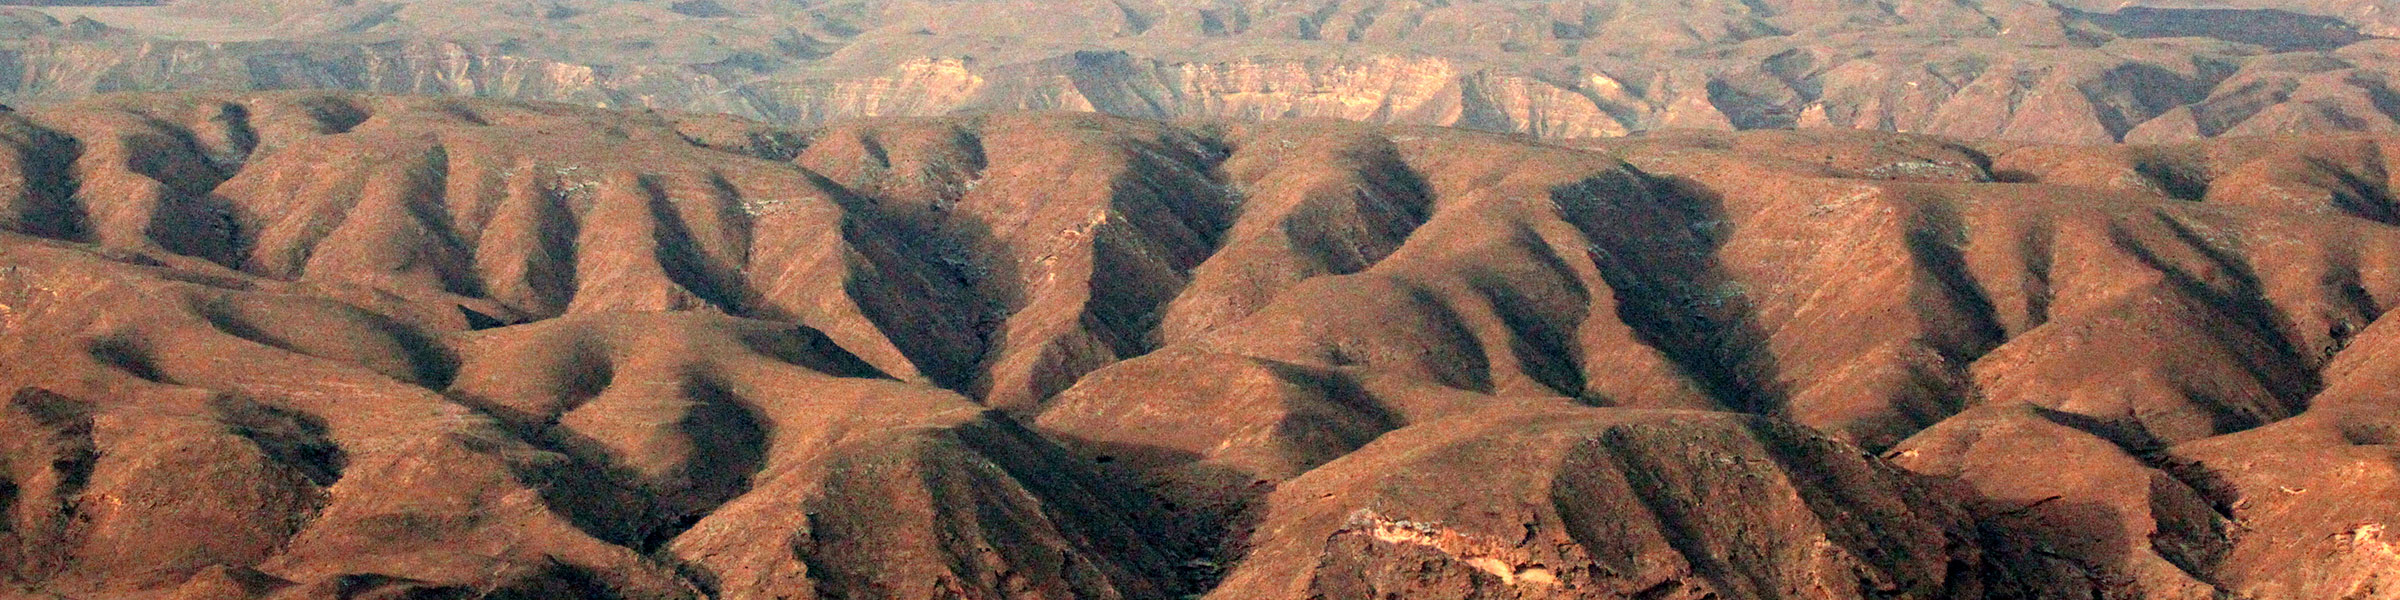 Desert Landscape Somalia